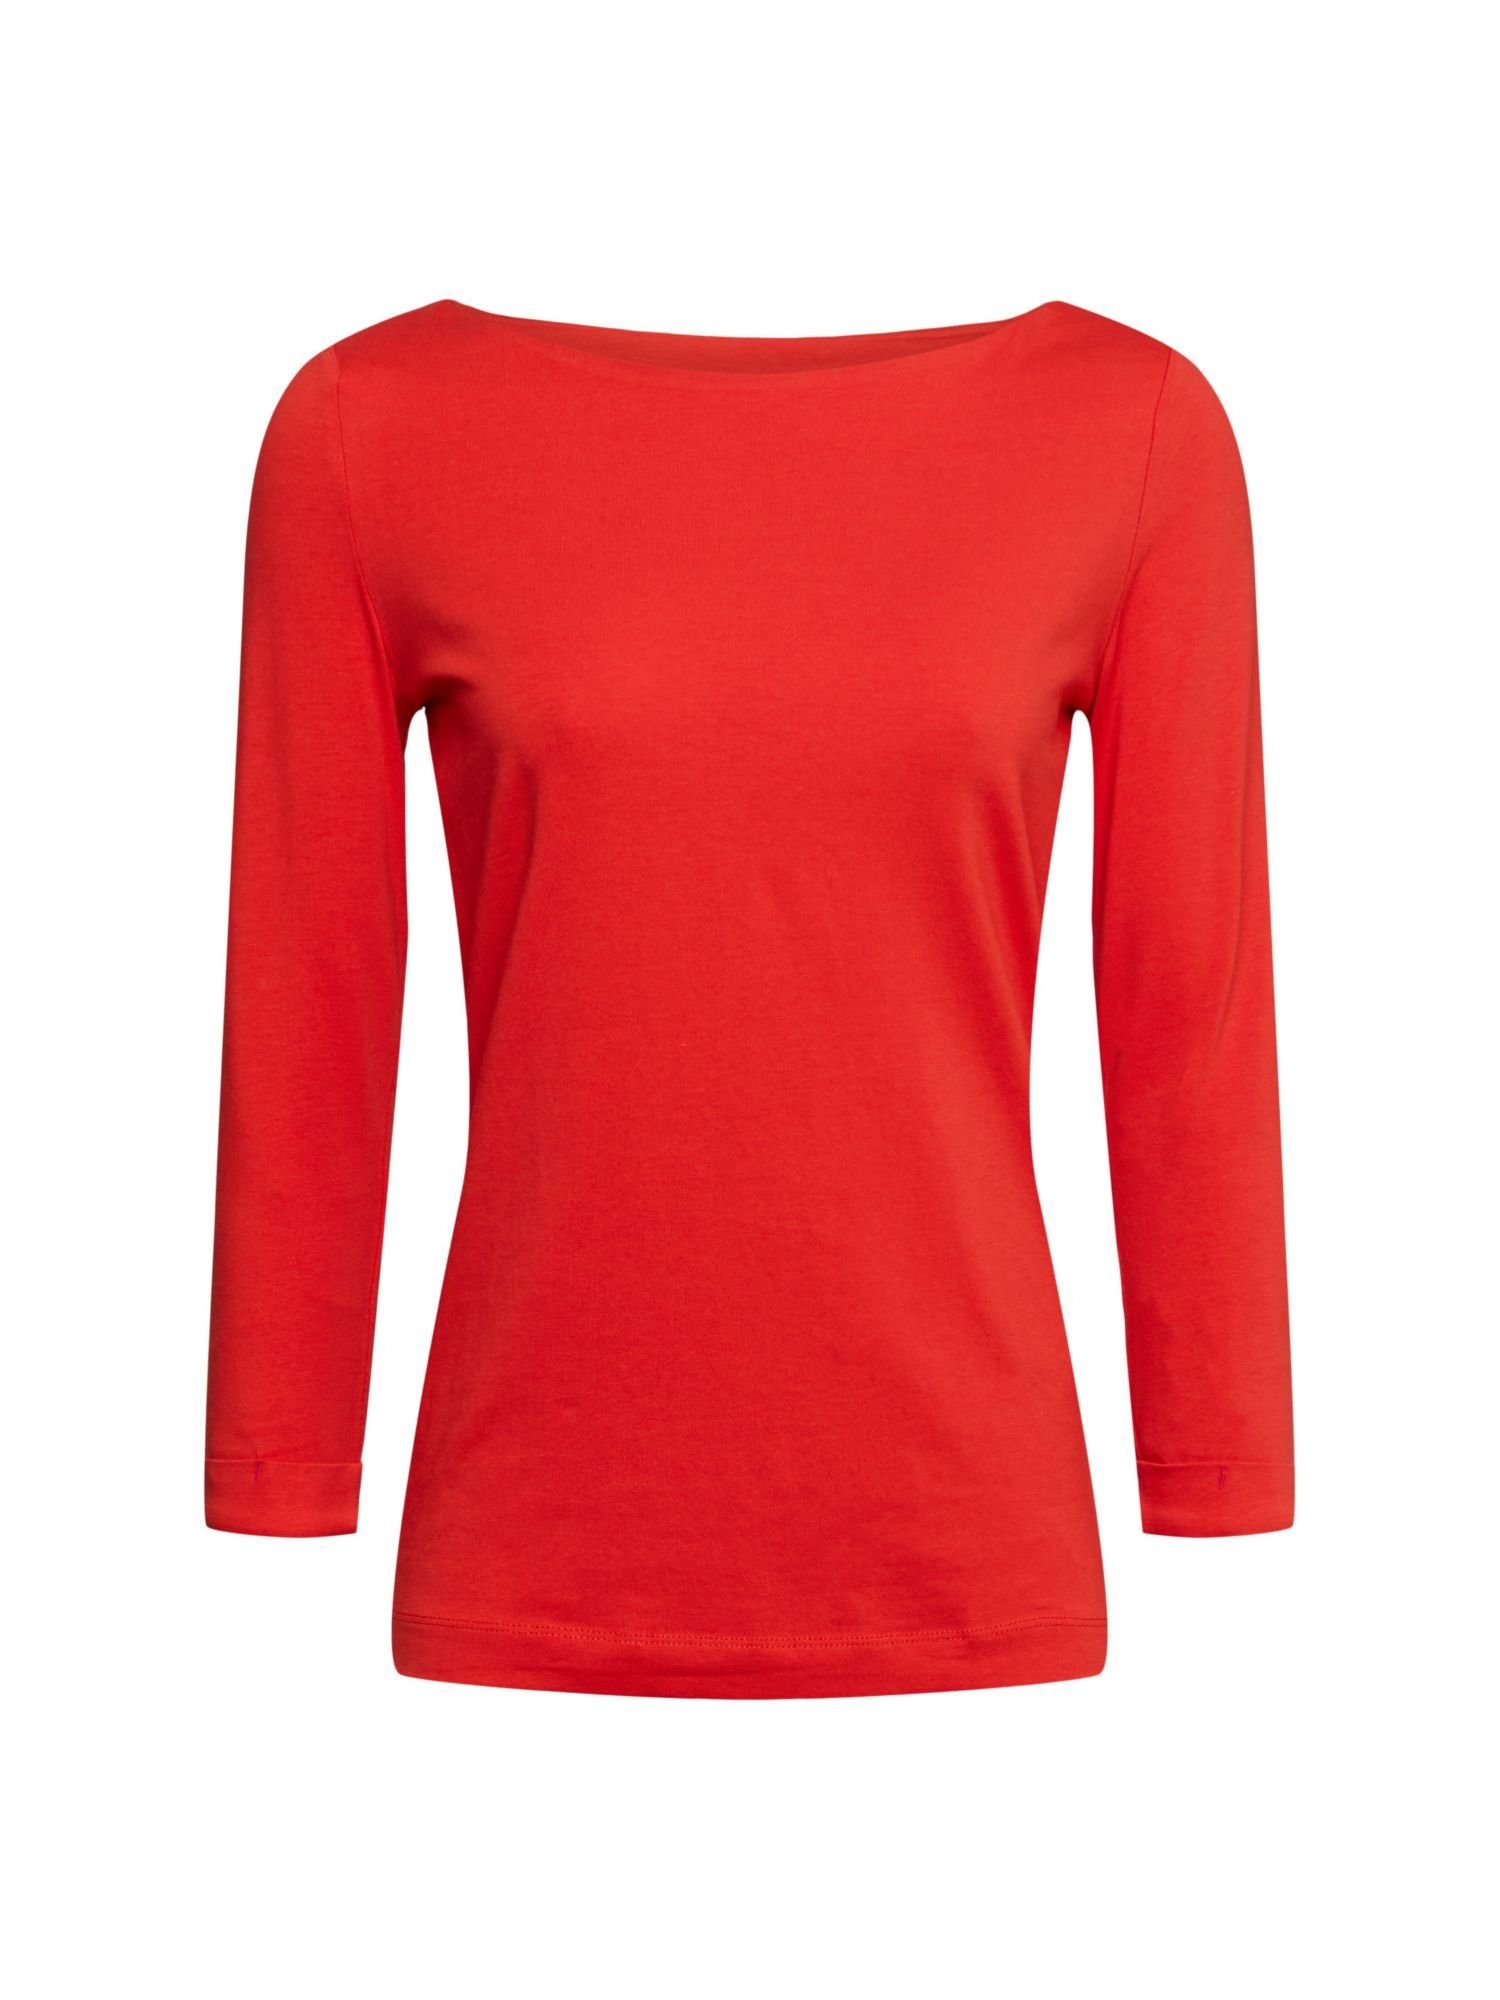 Esprit 3/4-Arm-Shirt Shirt mit 3/4-Ärmeln ORANGE RED